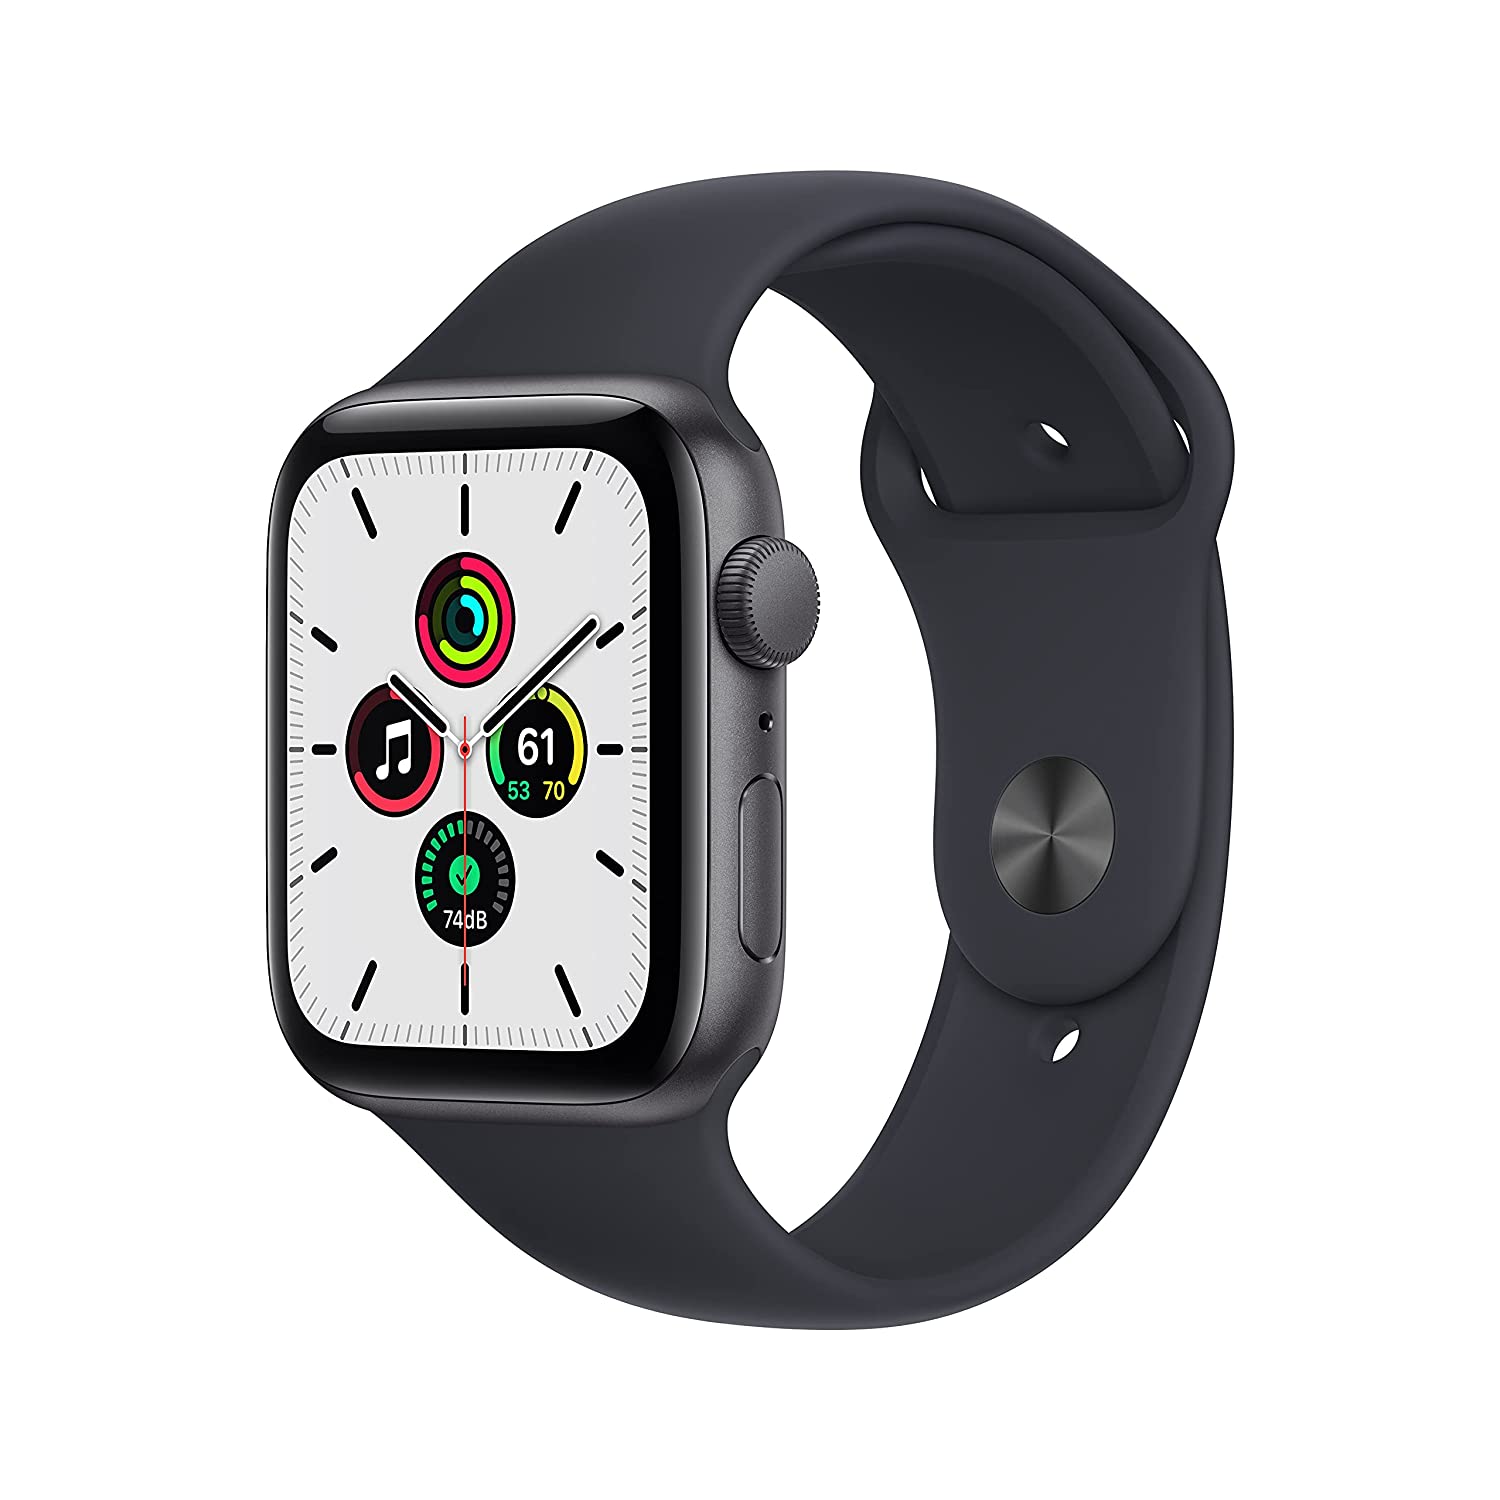 Apple watch XE Amazon sale offer